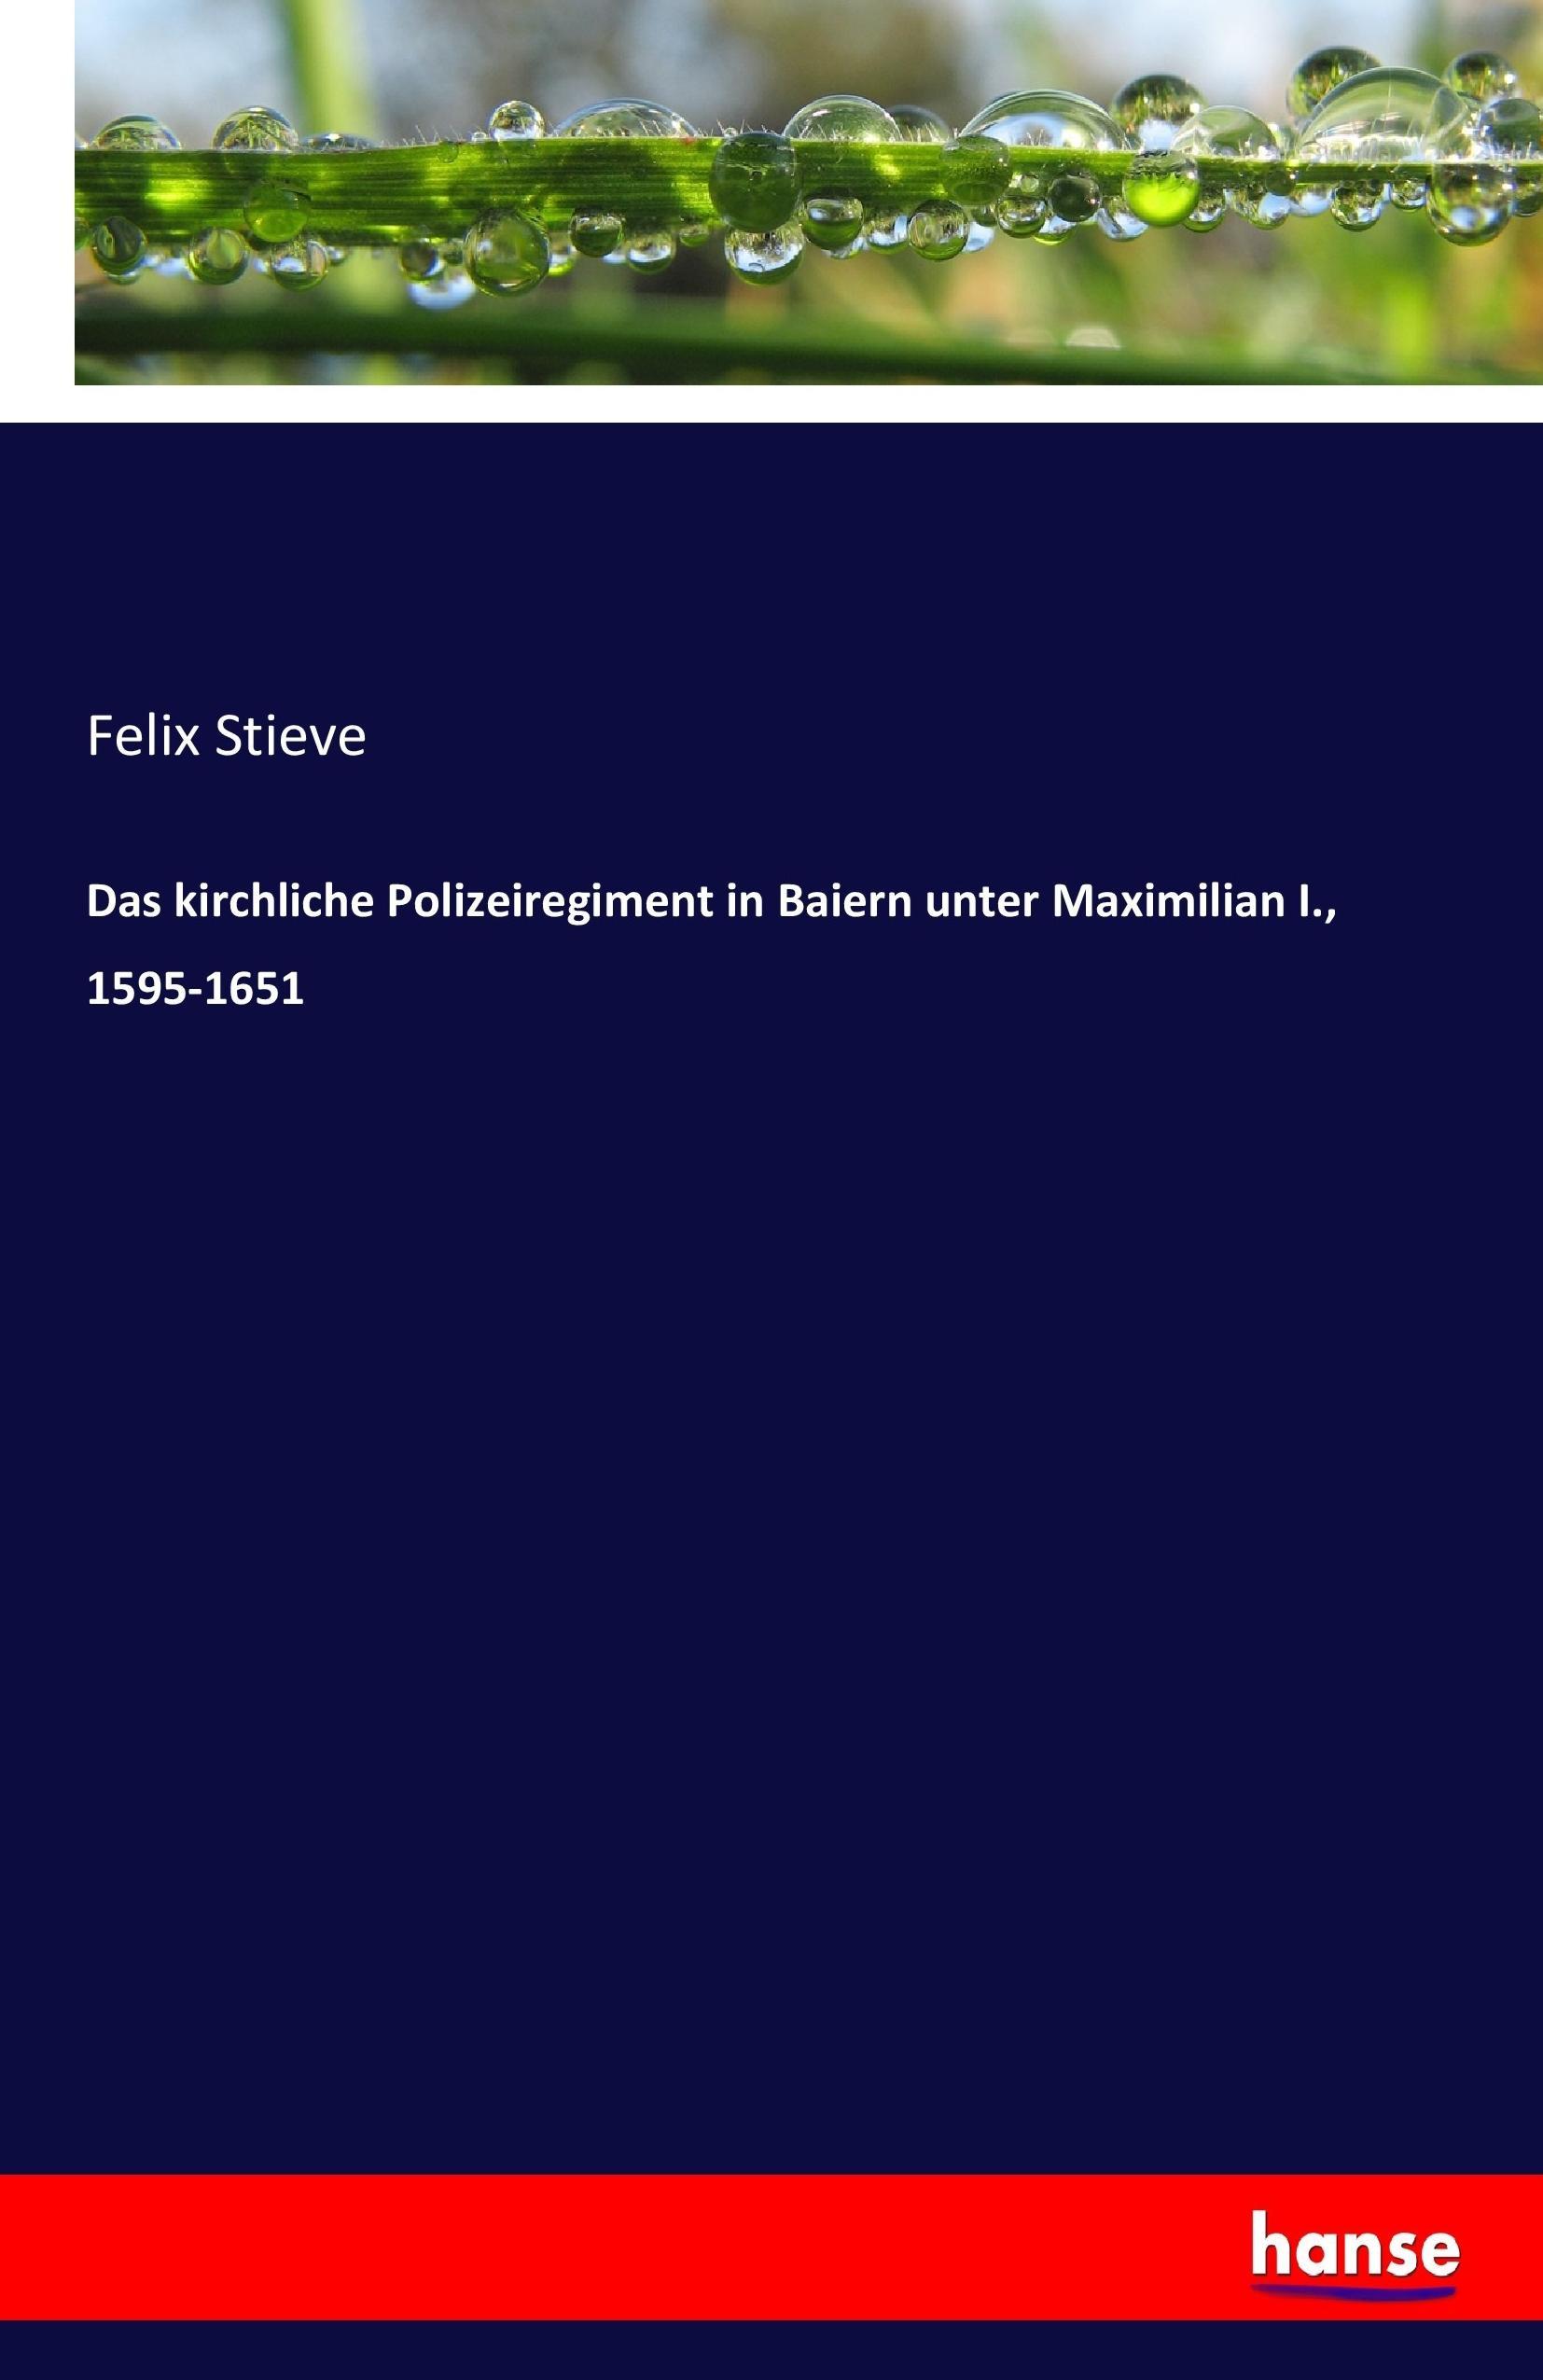 Das kirchliche Polizeiregiment in Baiern unter Maximilian I., 1595-1651 - Stieve, Felix